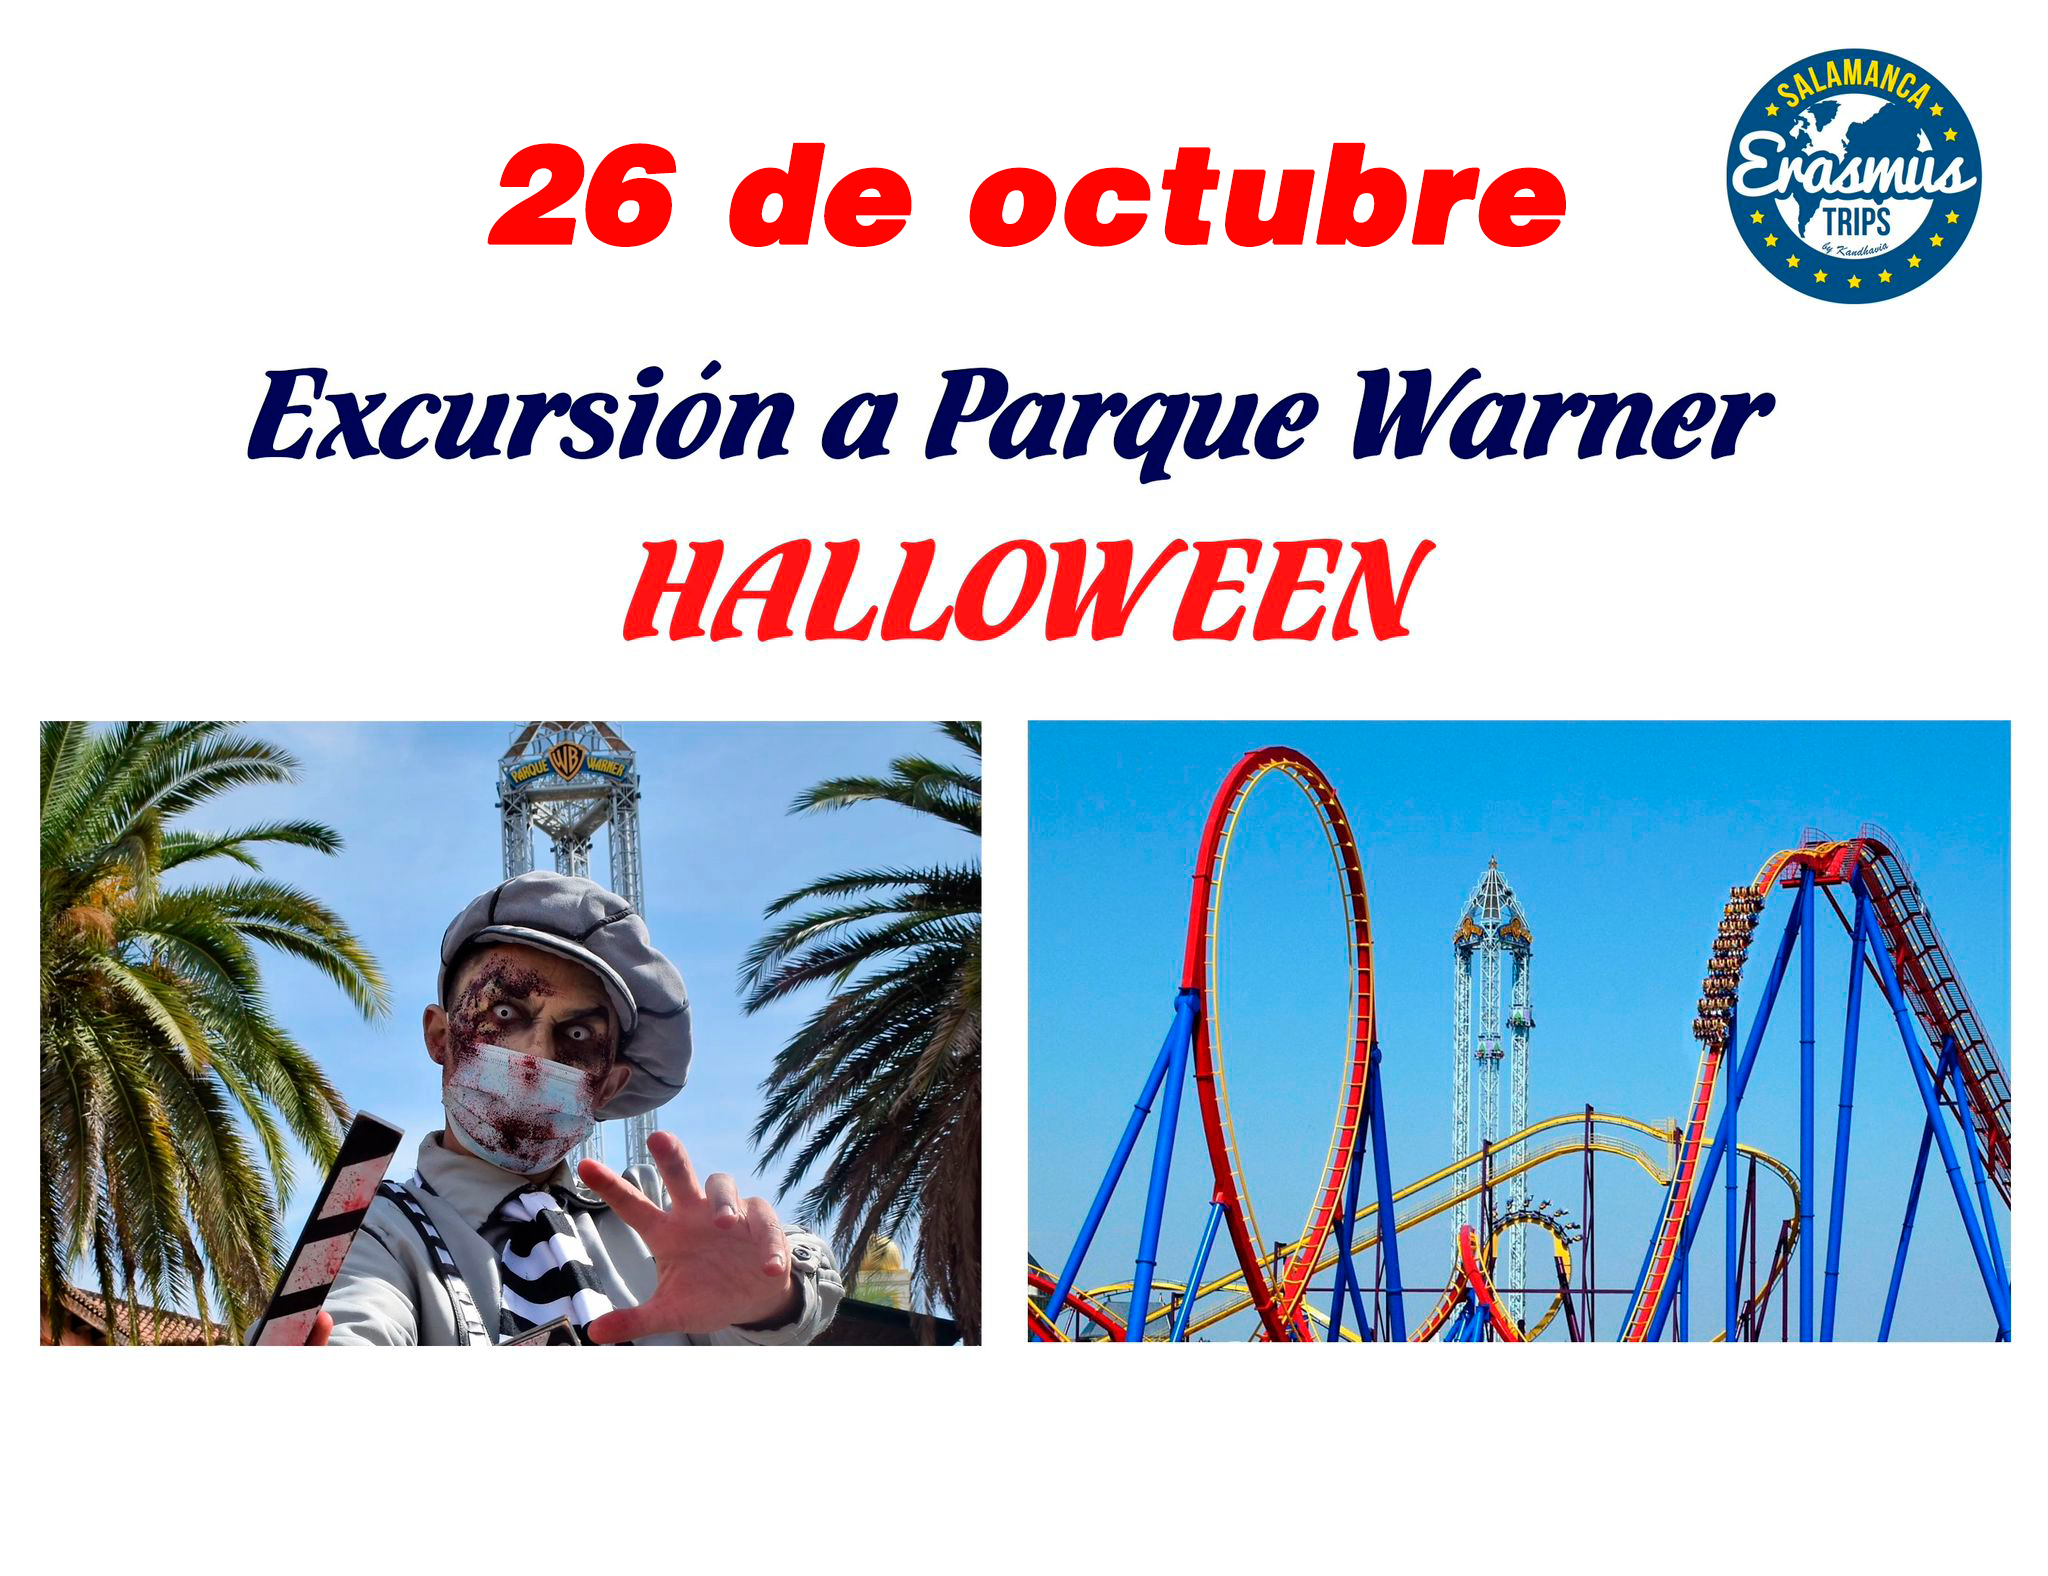  <strong> PARQUE WARNER MADRID  HALLOWEEN  # sbado 26 de octubre